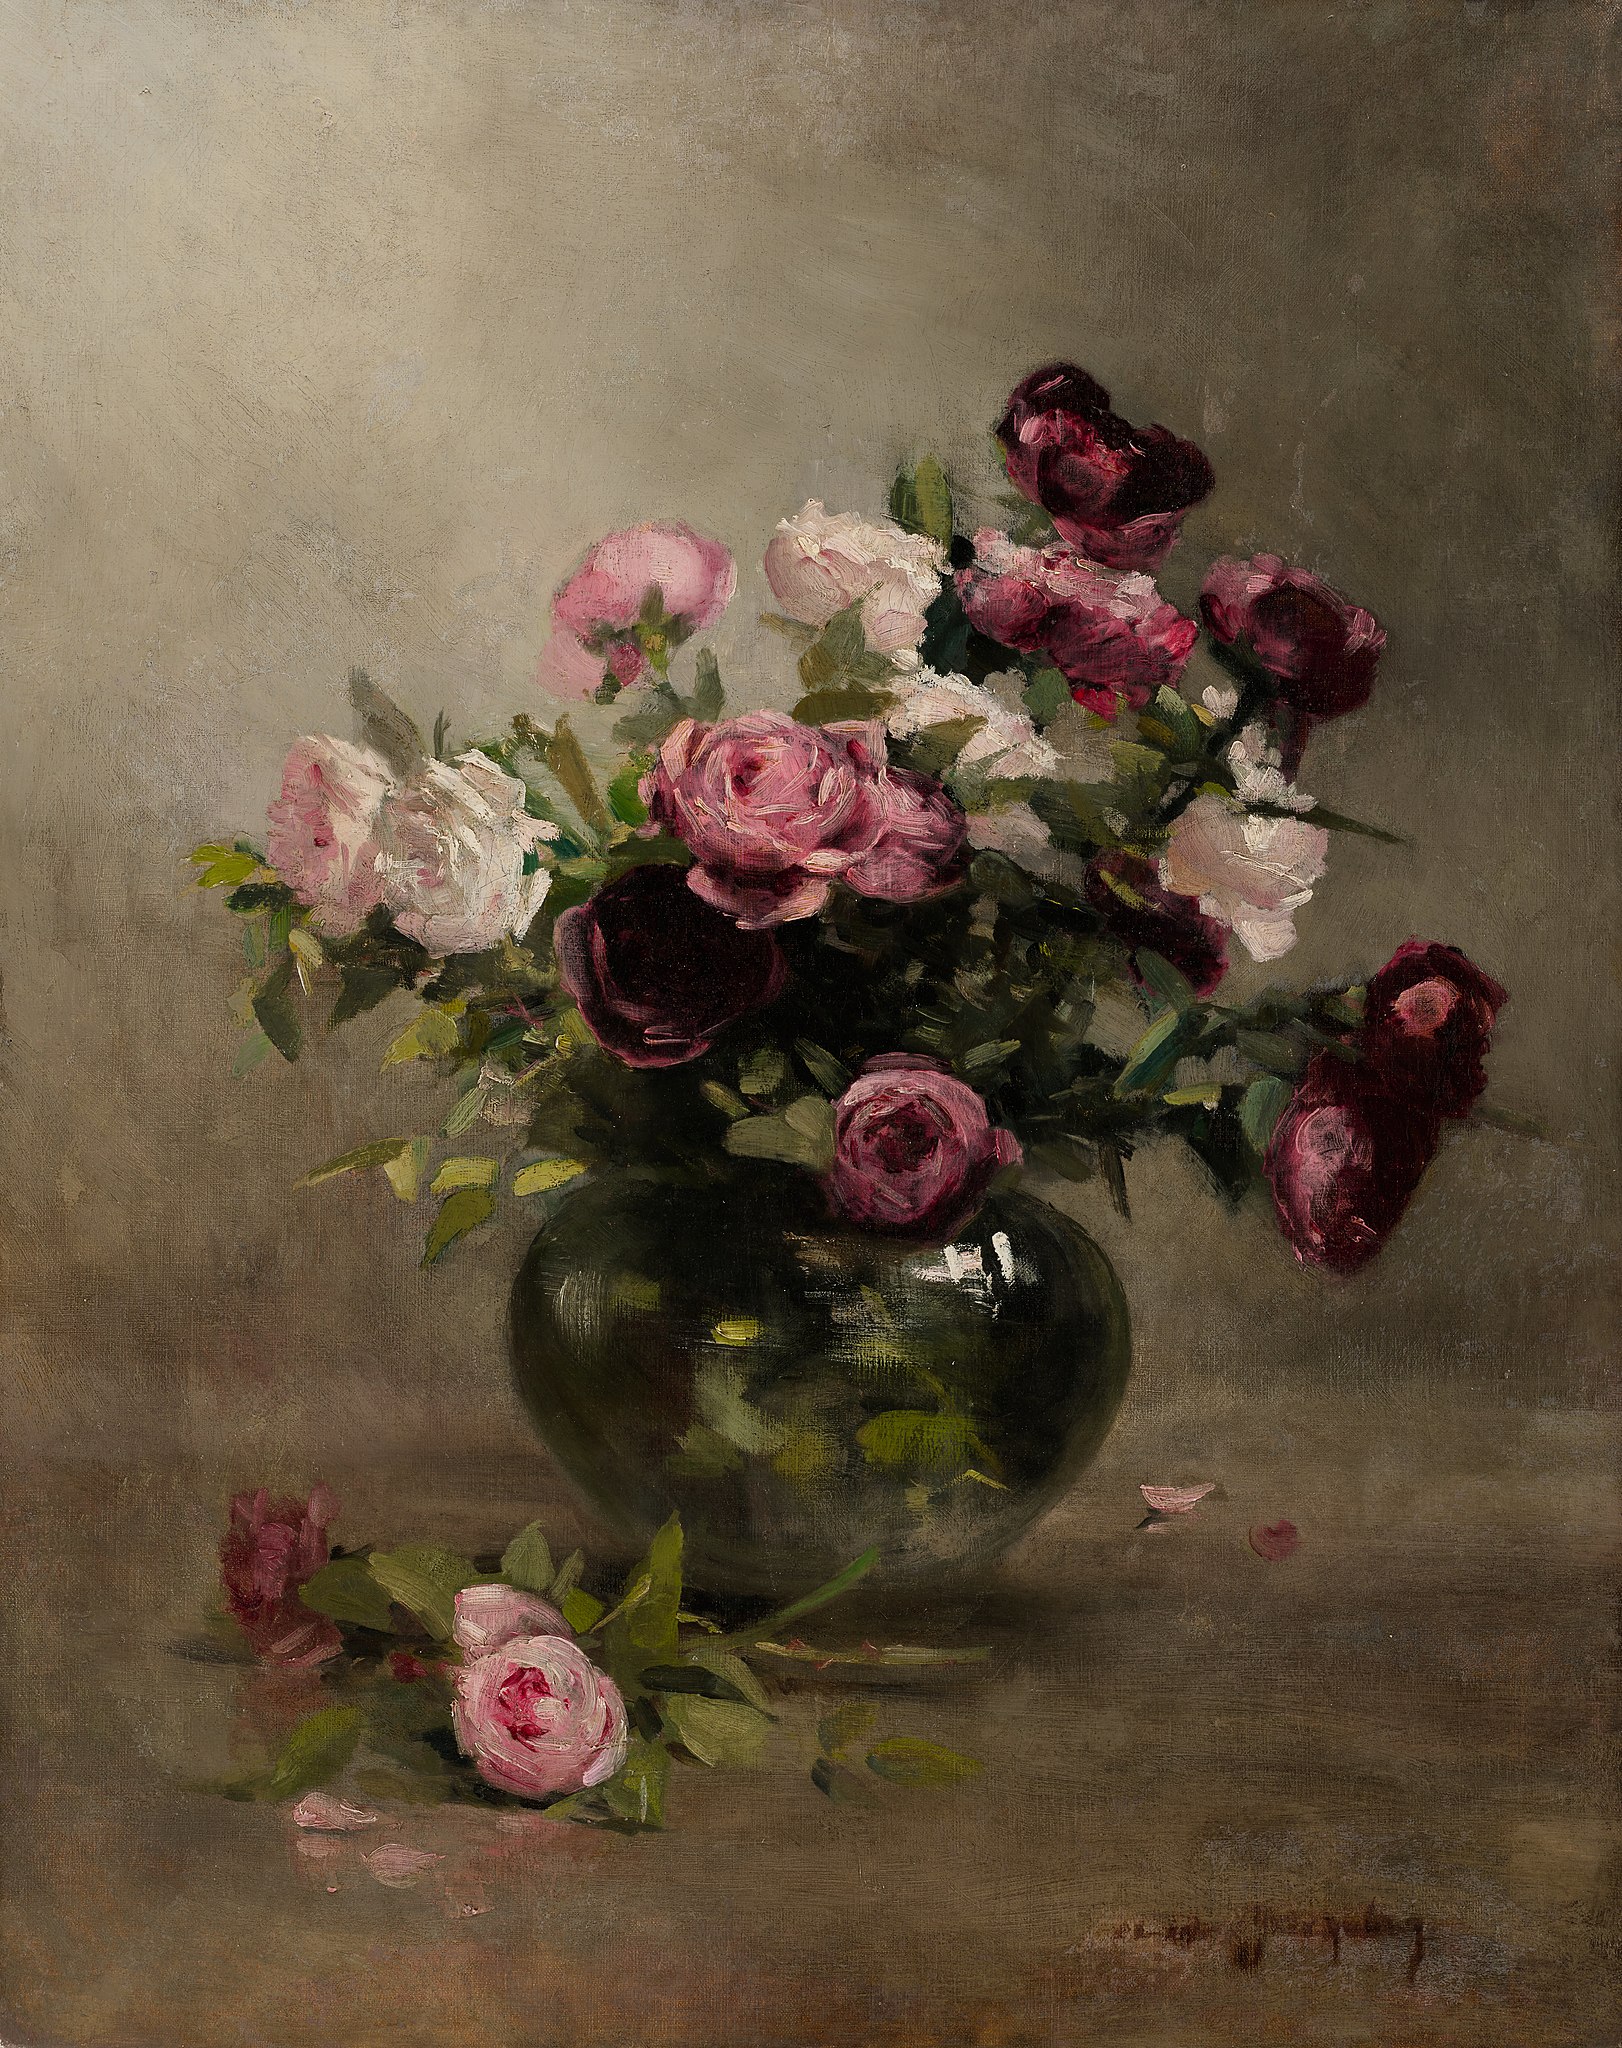 Vase mit Rosen by Eva Gonzalès - Anfang der 1870er Jahre - 79,85 × 63,34 cm Minneapolis Institute of Art